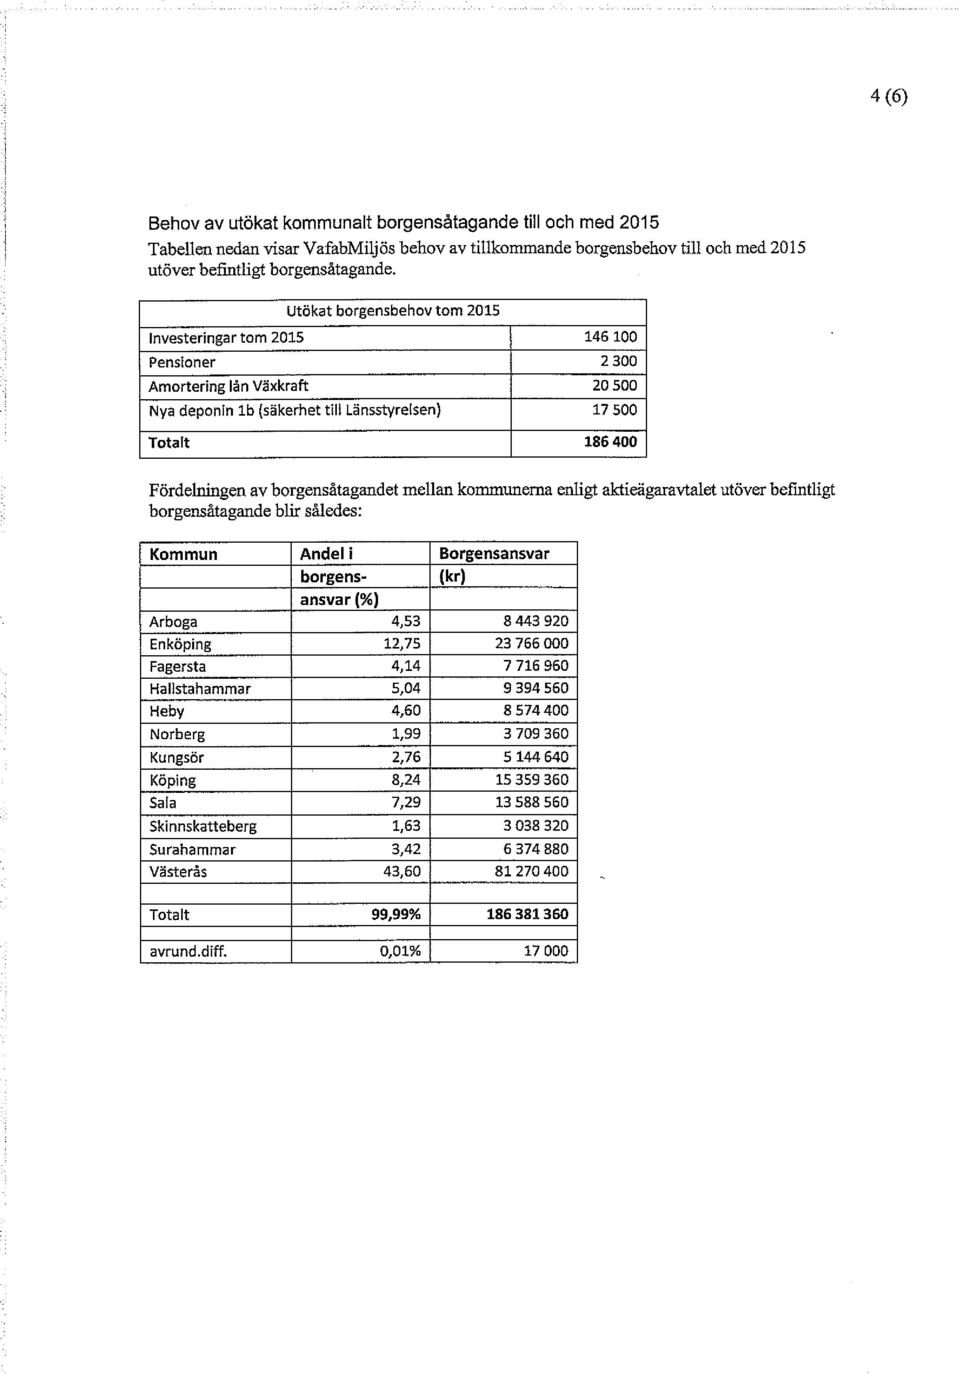 borgensåtagandet mellan kommunerna enligt aktieägaravtalet utöver befintligt borgensåtagande blir således: Kommun Andel i Borgensansvar borgens- (kr) ansvar(%) Arboga 4,53 8 443 920 Enköping 12,75 23